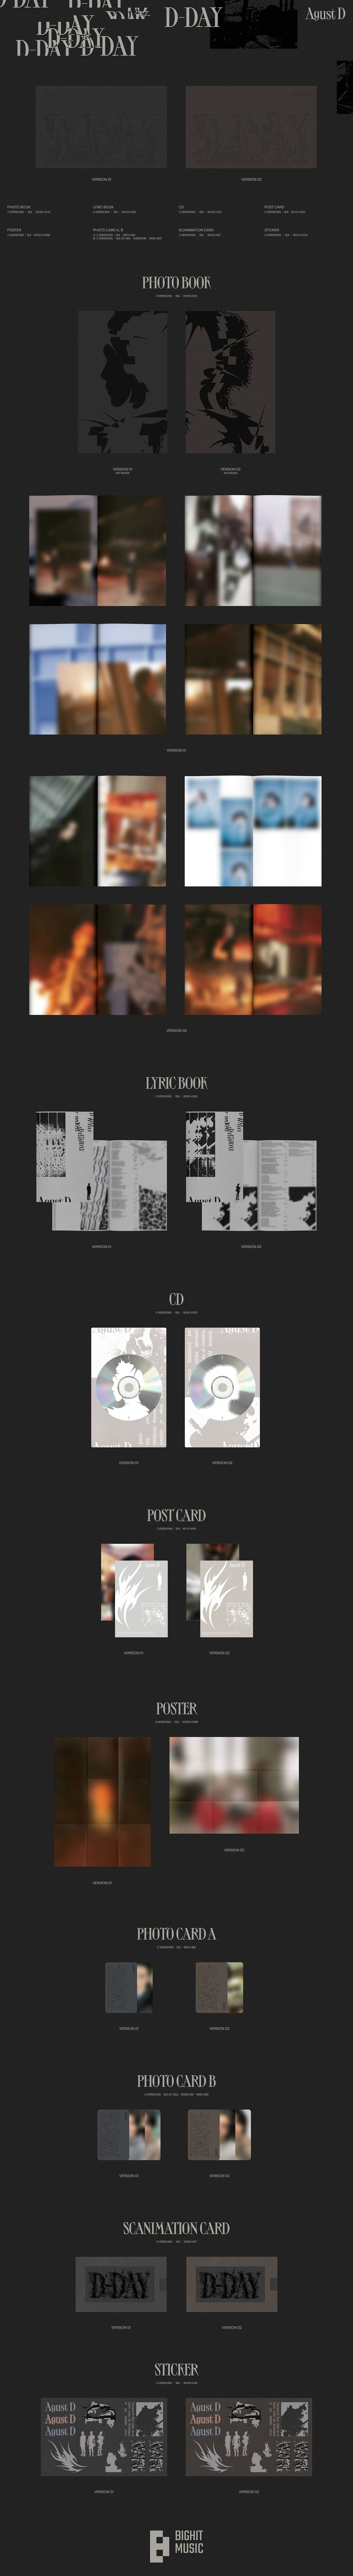 Agust D (BTS Suga) 1st Album D-DAY